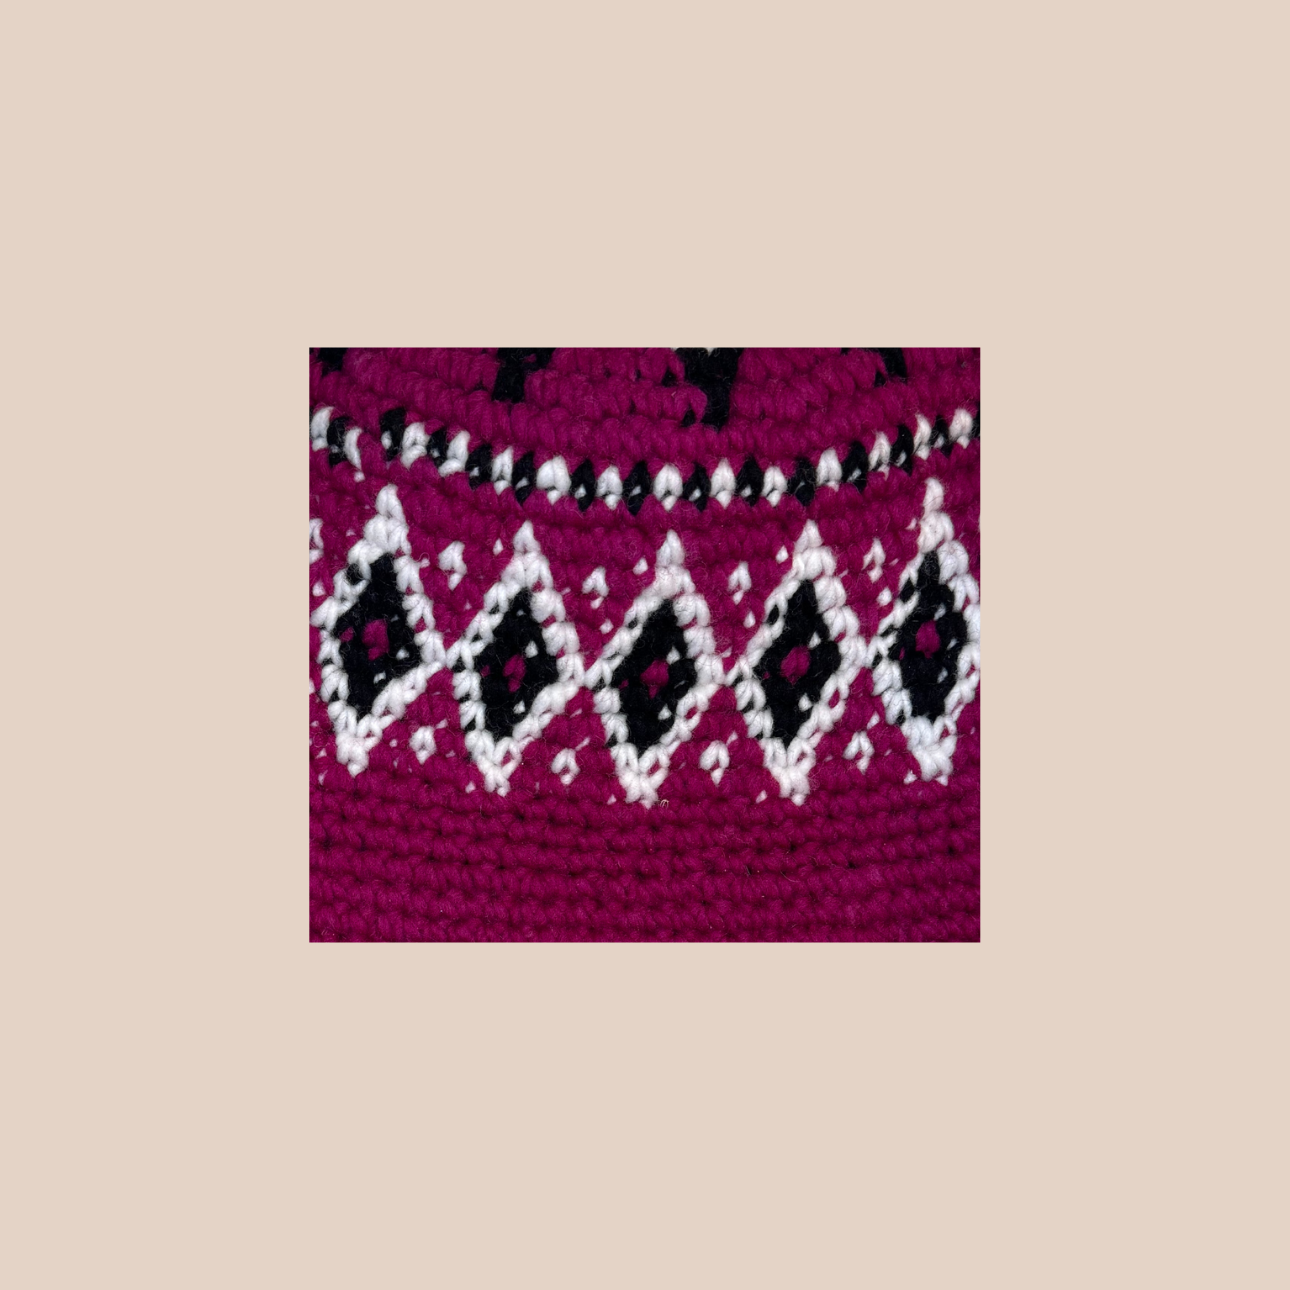 Image zoomée d'un bucket hat crocheté en laine et acrylique, arborant des couleurs vives et audacieuses